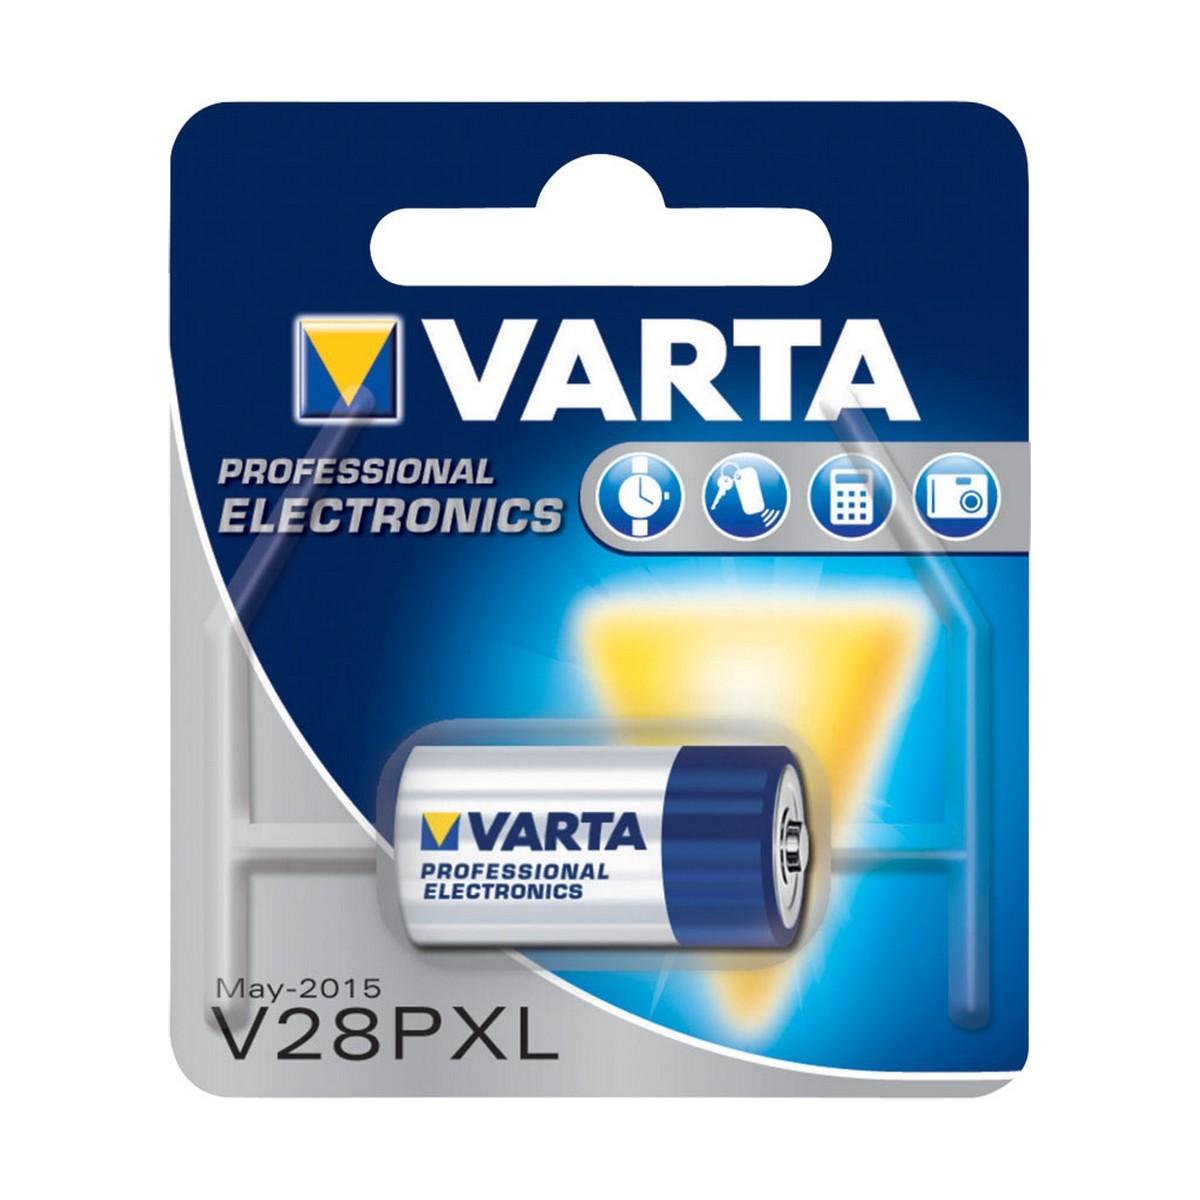 Se Varta Batteri Photo V28pxl 6,0v hos Boligcenter.dk